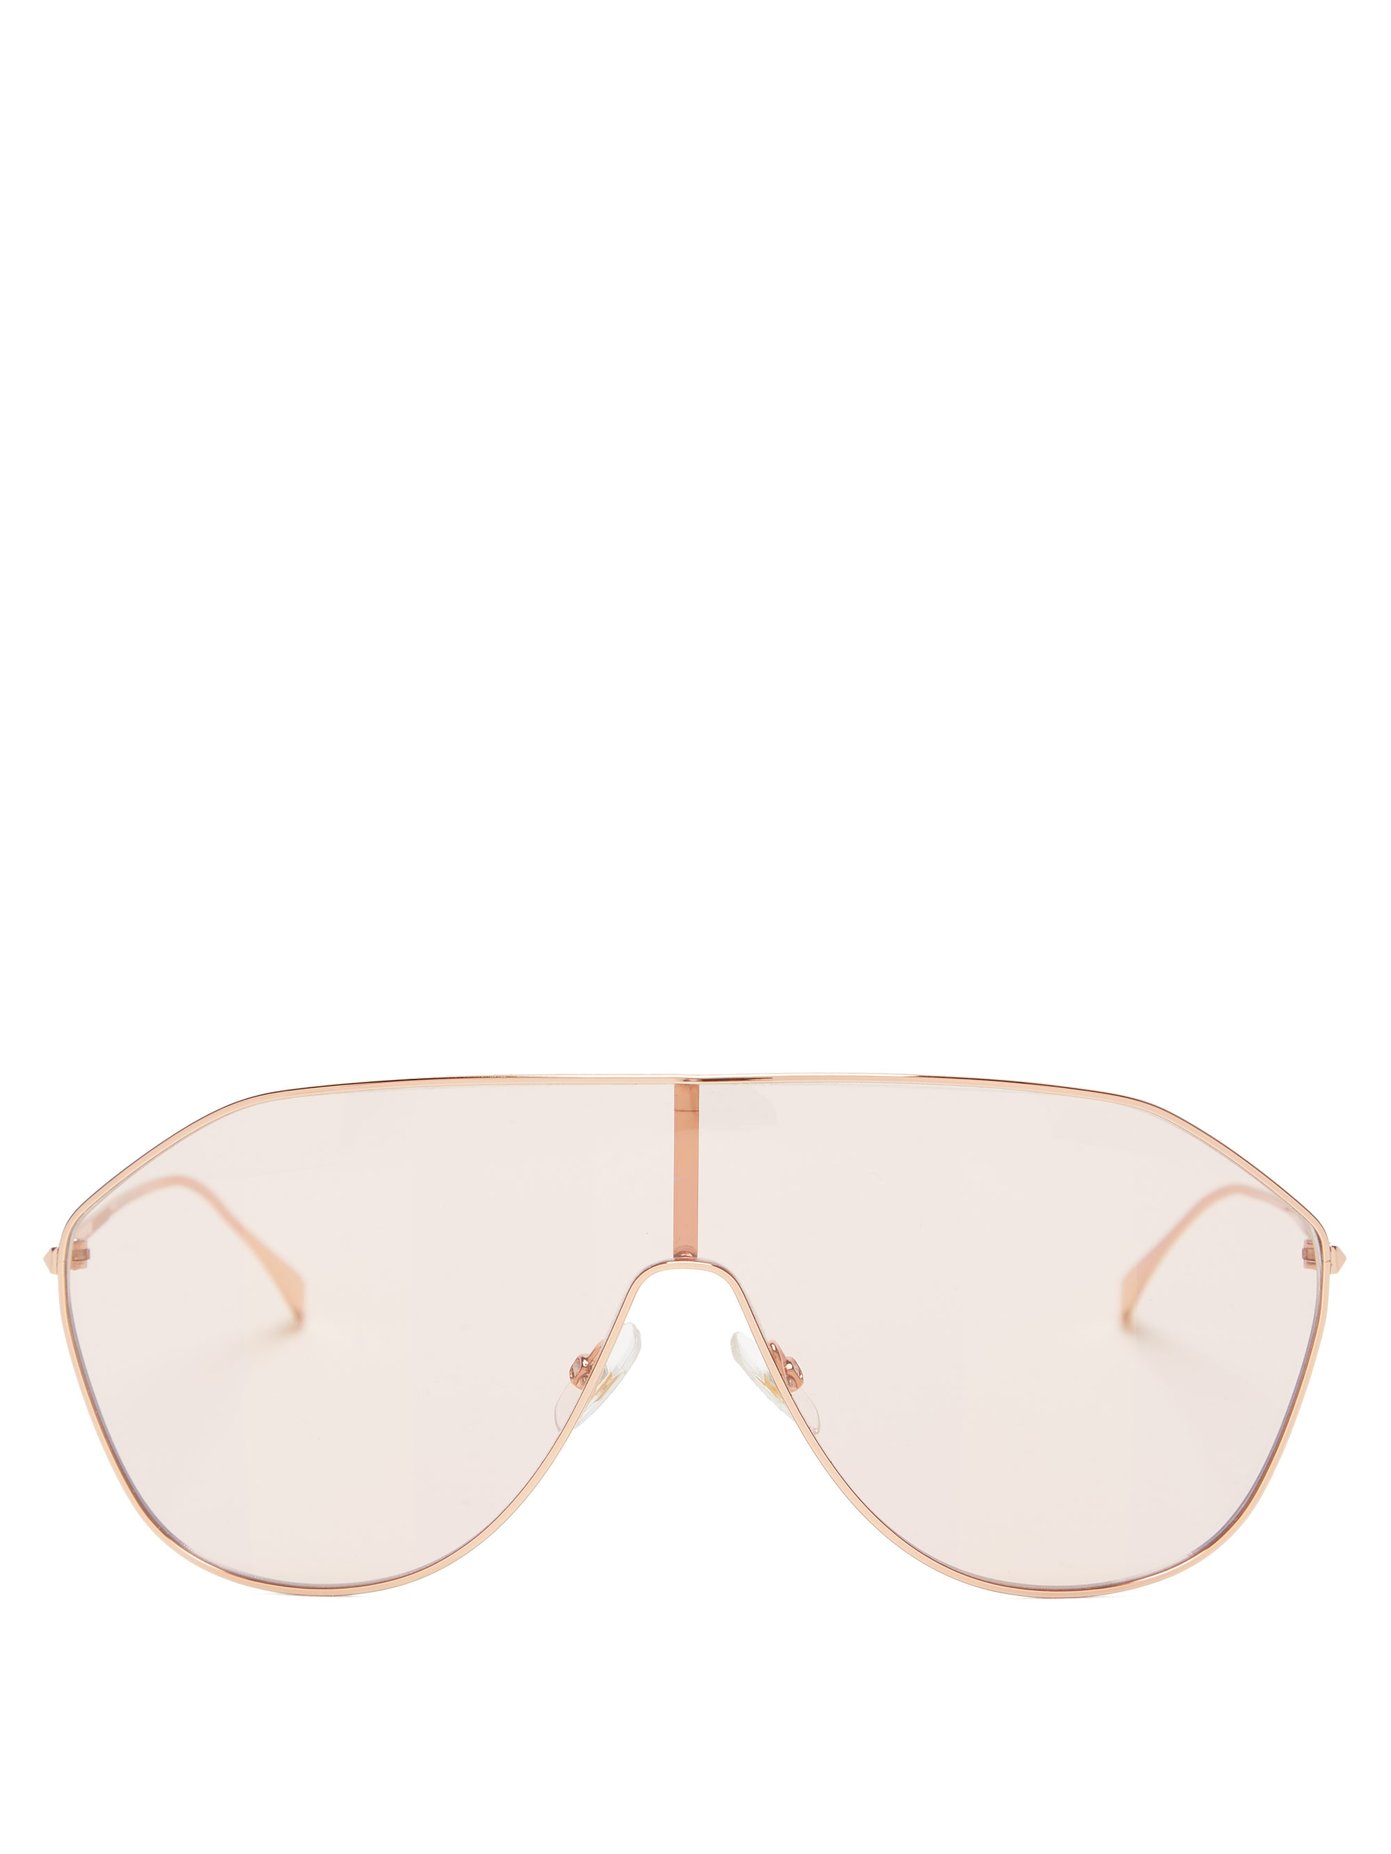 fendi shield sunglasses